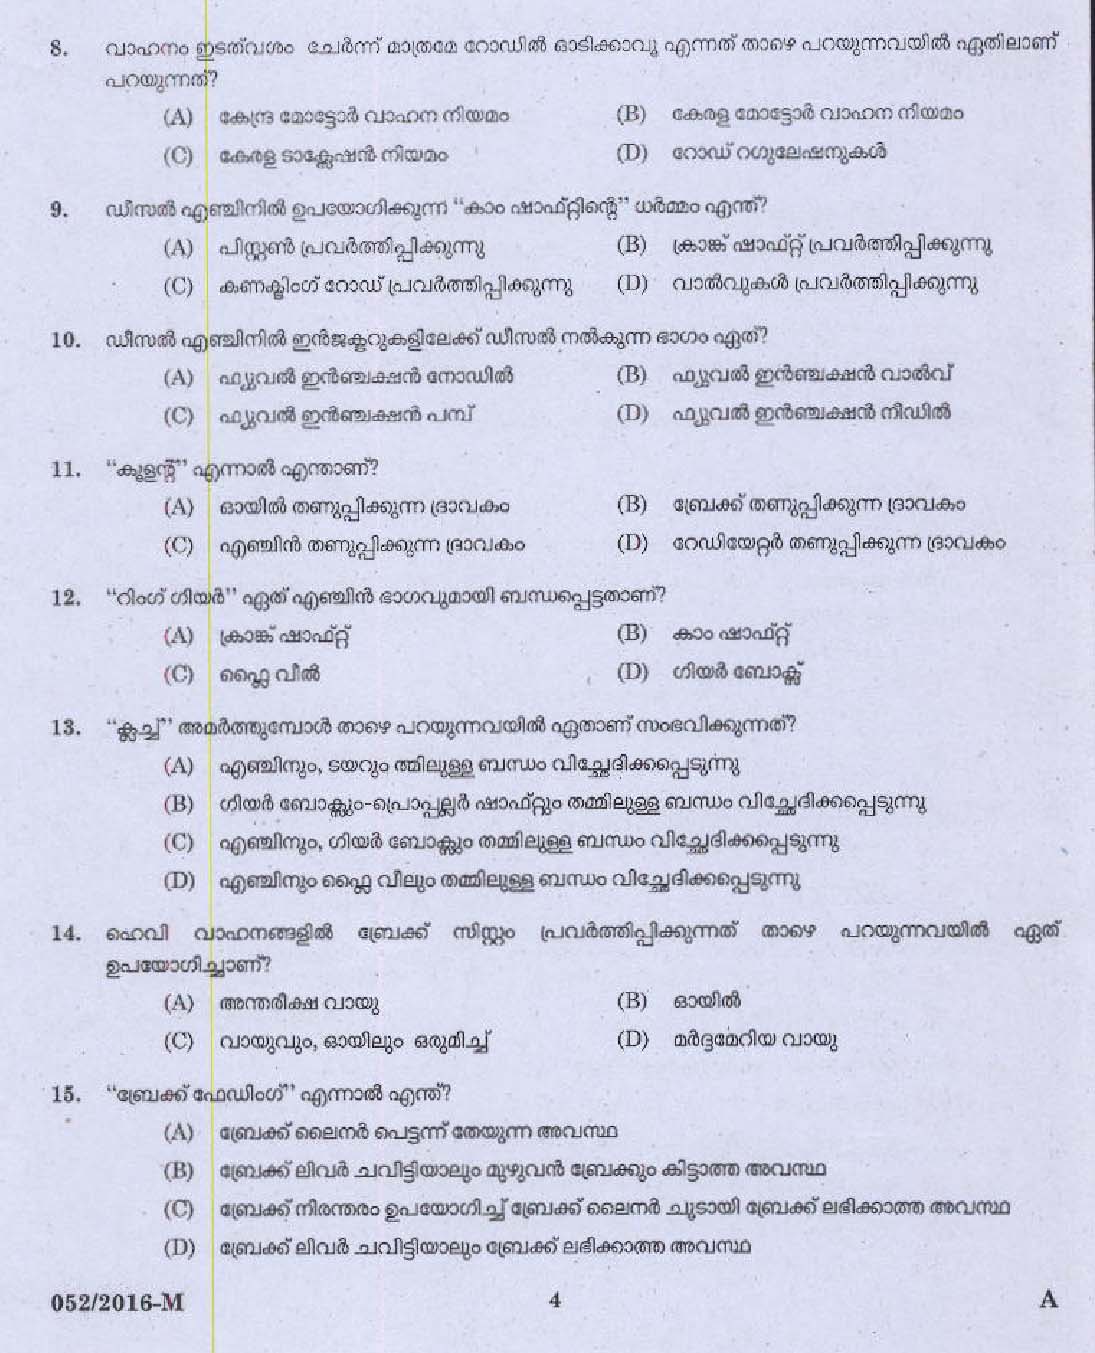 Kerala PSC Driver Grade II Exam 2016 Question Paper Code 0522016 M 2